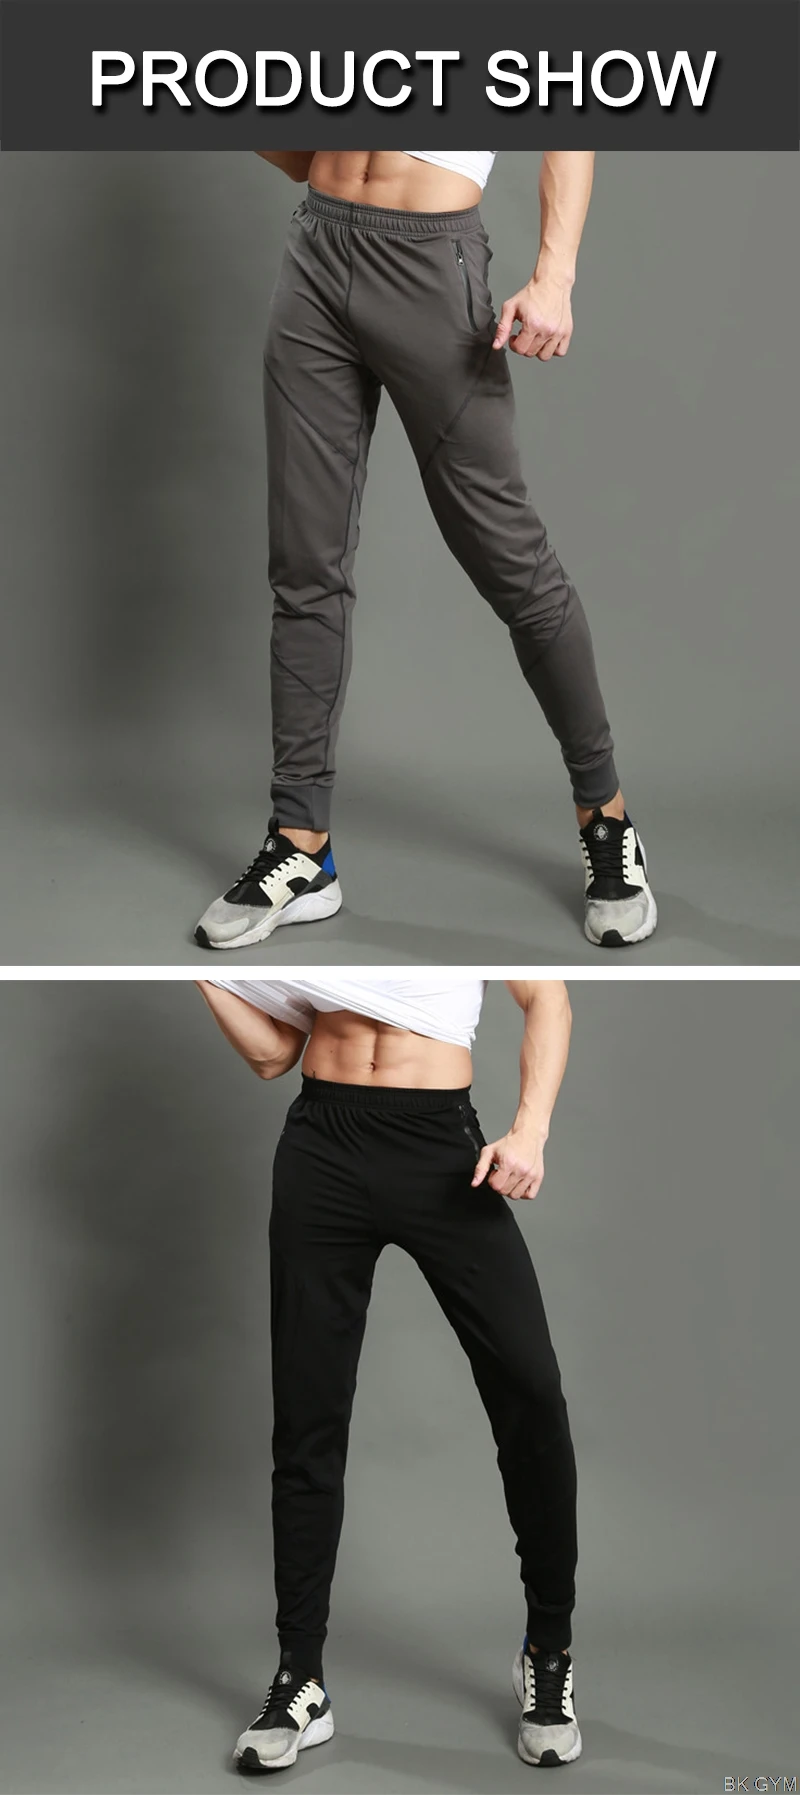 BARBOSK, Мужские штаны для бега, облегающие, для бега, для бега, спортивные штаны, для фитнеса, леггинсы, спортивный костюм, для тренировки, эластичные брюки